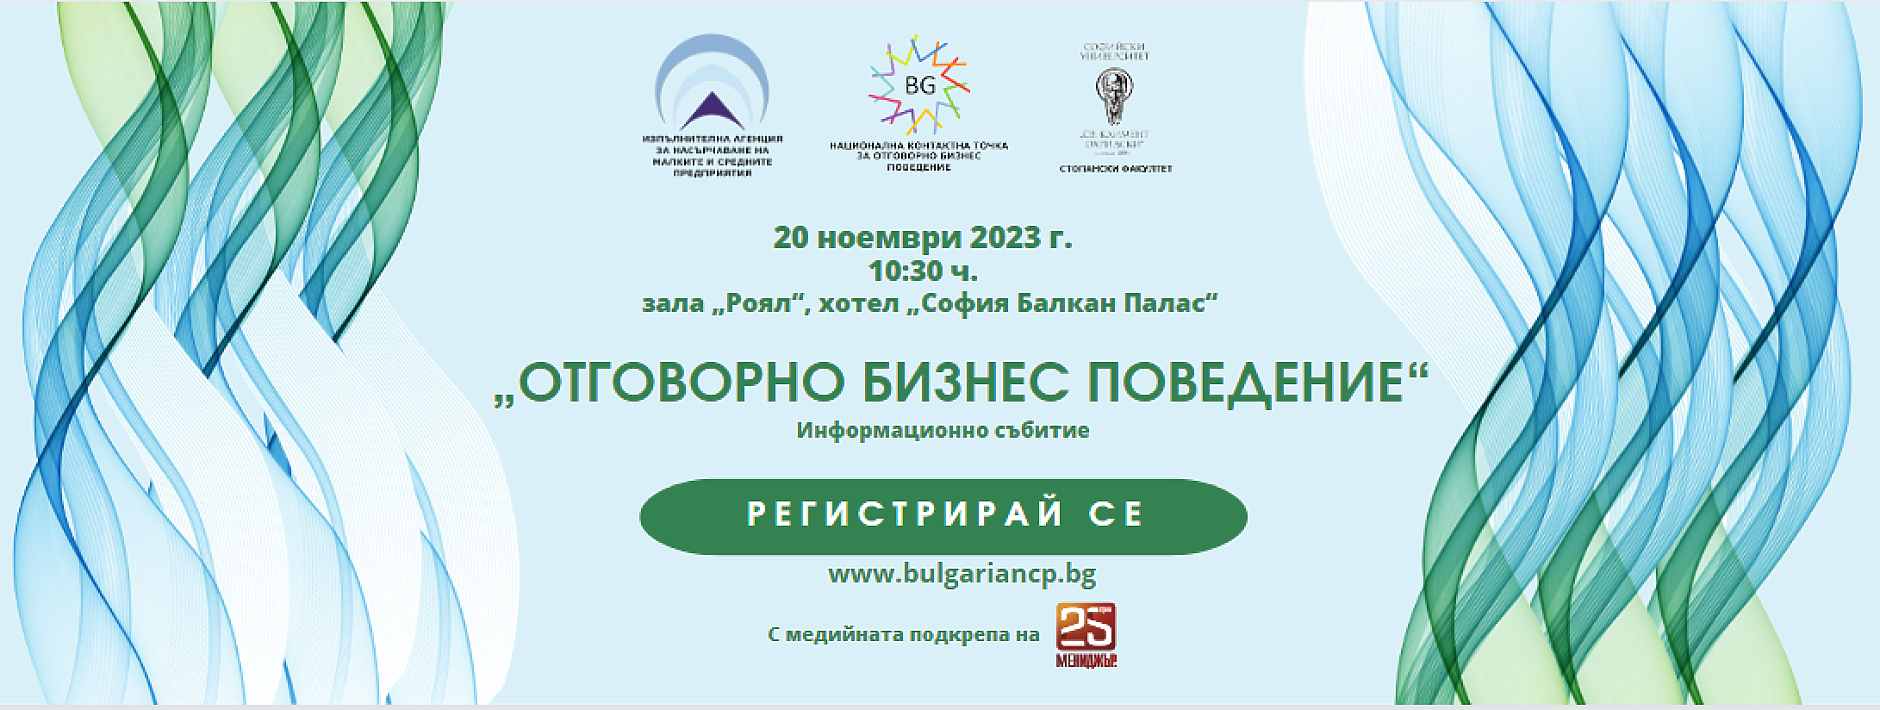 Стандартите на ОИСР за отговорно бизнес поведение ще бъдат представени на  специално събитие в София   